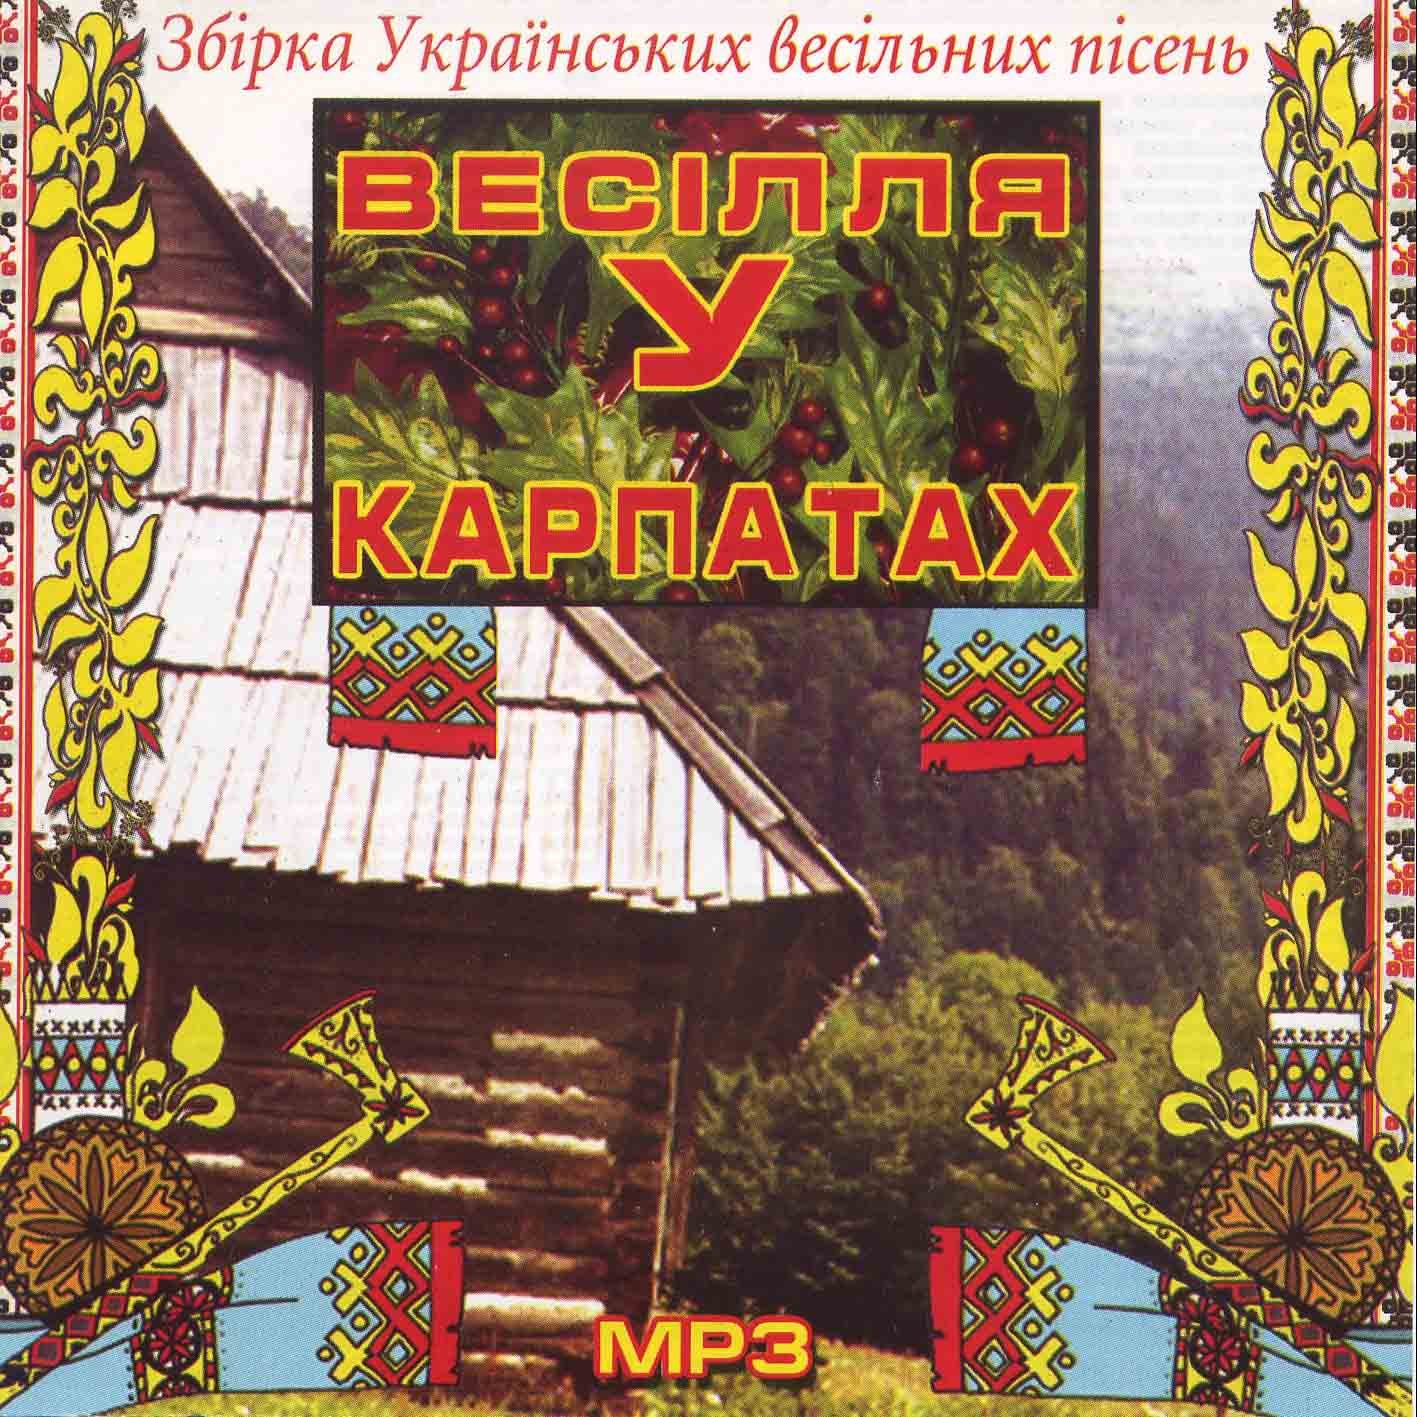 Українські весільні пісні - Весілля у Карпатах